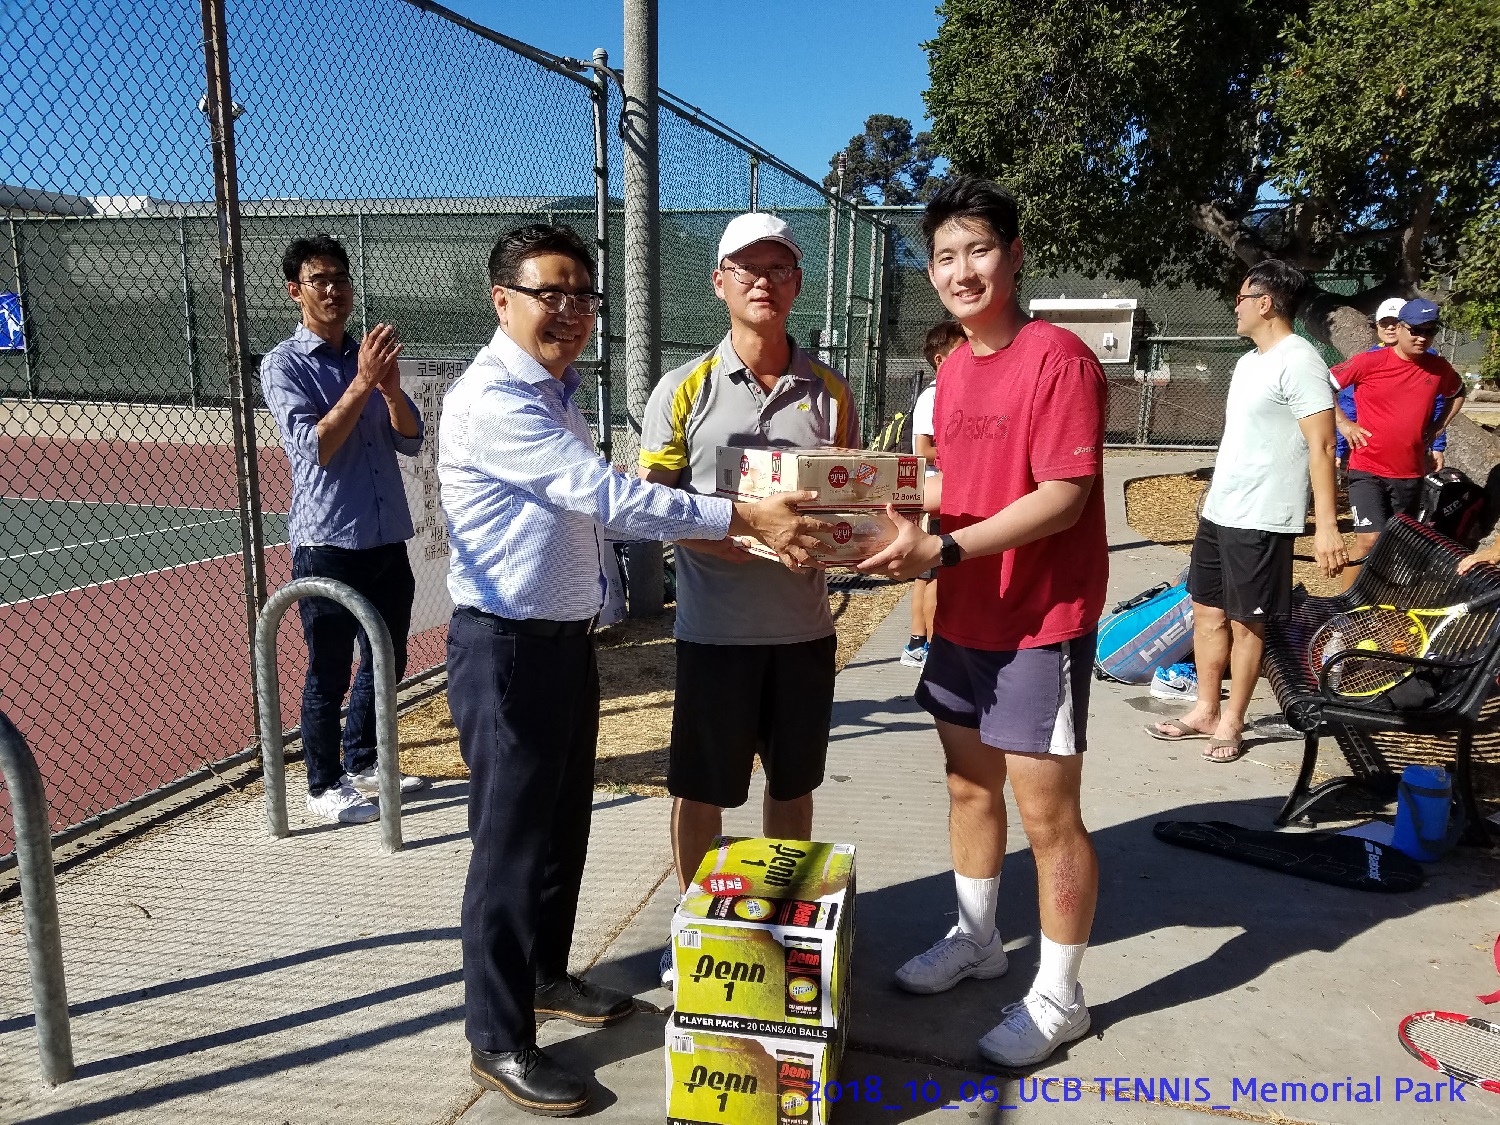 resized_2018_10_06_UCB Tennis at Memorial Park_152304.jpg